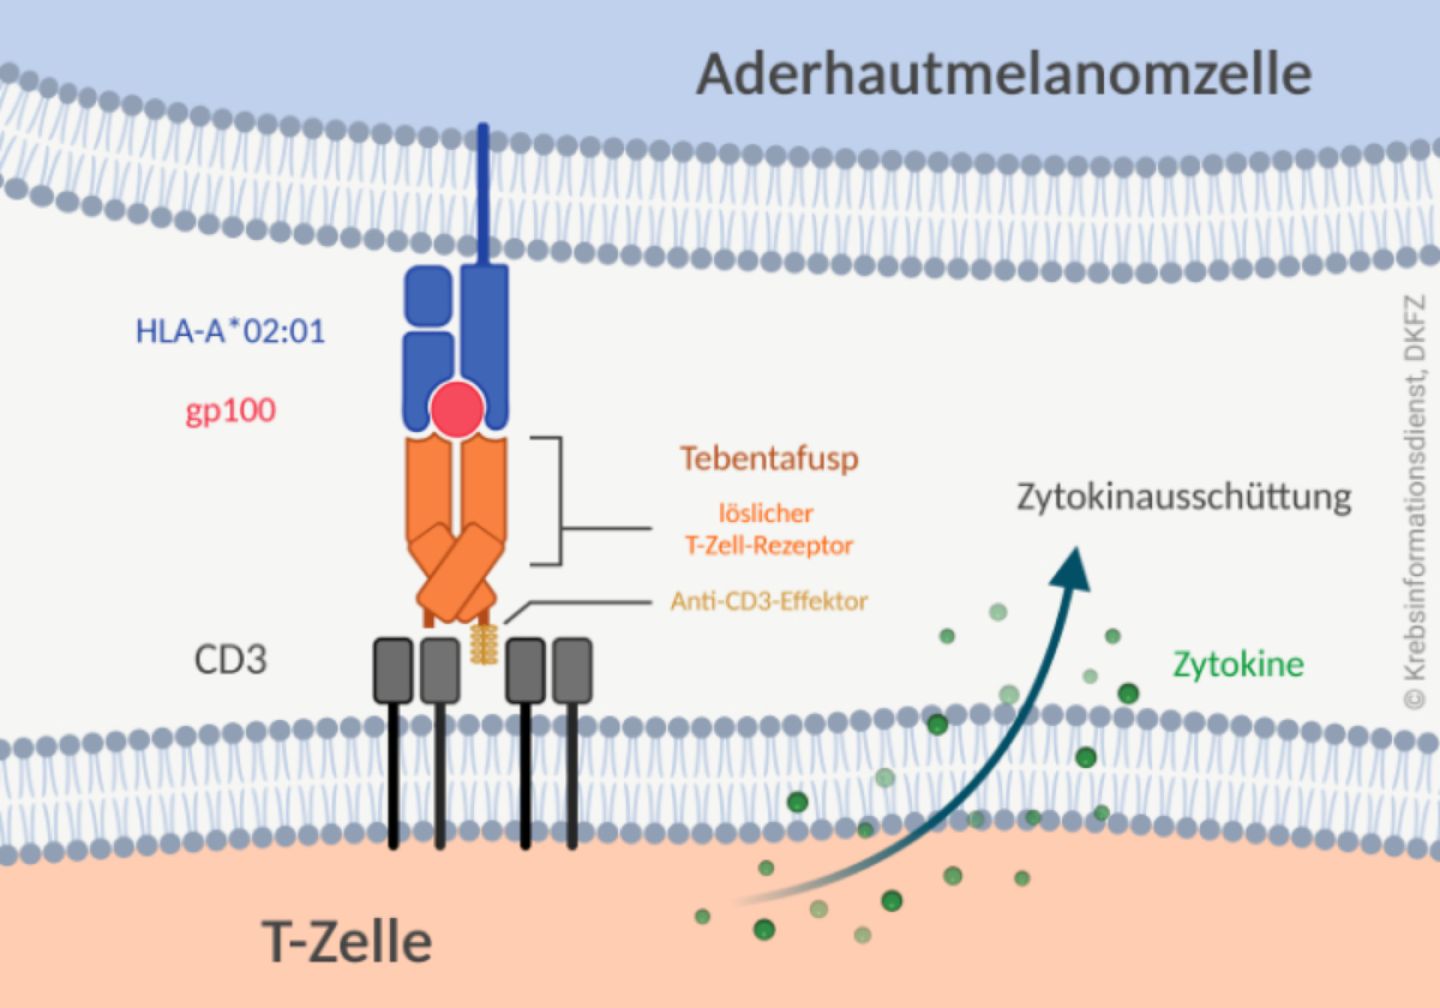 Tebentafusp besteht aus einem löslichen T-Zell-Rezeptor und einem Anti-CD3-Effektor. Der T-Zell-Rezeptor erkennt das Protein gp100 auf Aderhautmelanomzellen, das von HLA-A*02:01-Molekülen präsentiert wird und der Anti-CD3-Effektor bindet CD3 auf T-Zellen.